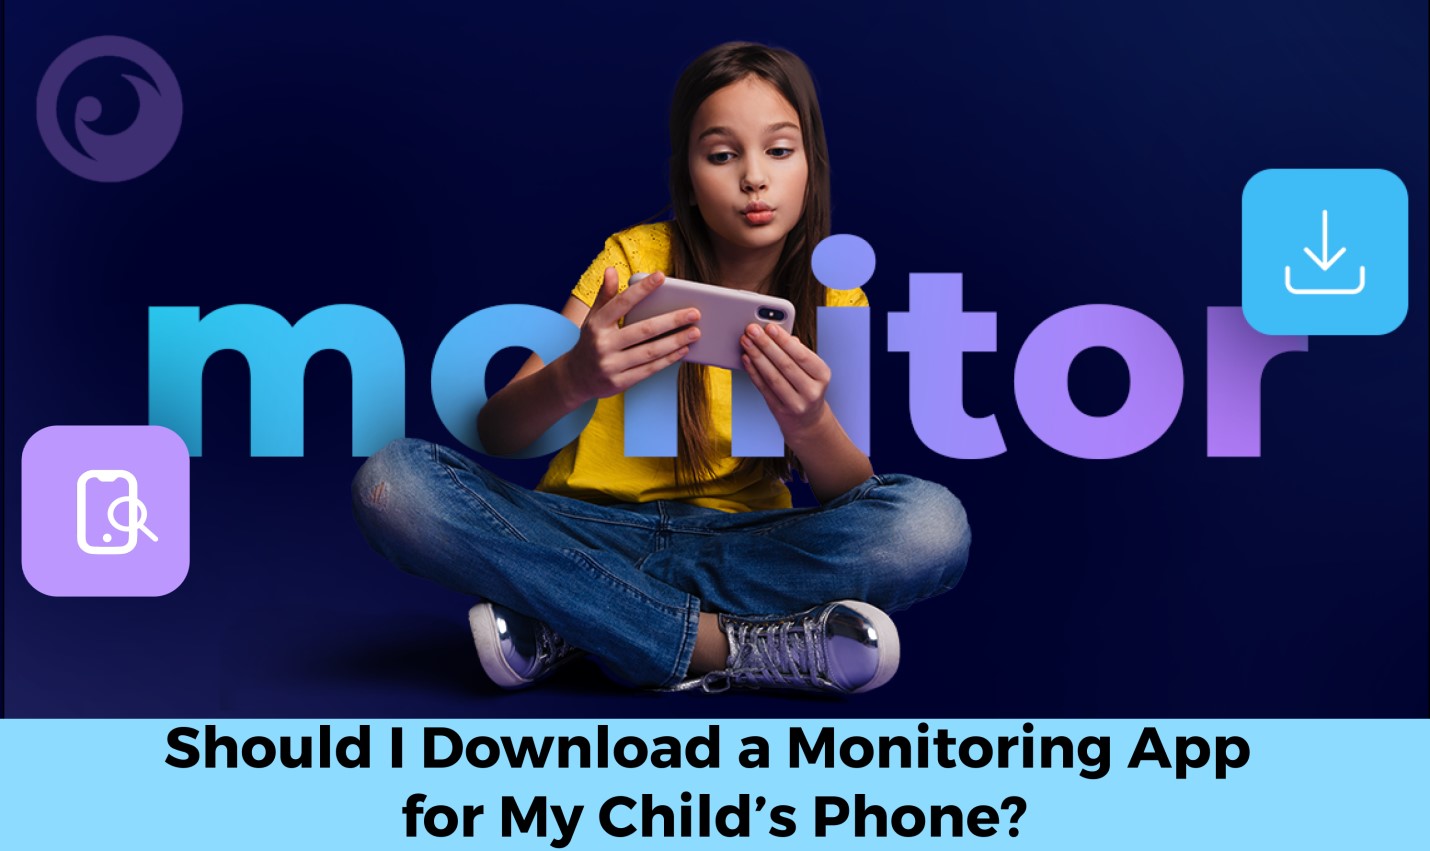 Czy powinienem pobrać aplikację monitorującą na telefon mojego dziecka? - obraz wiadomości na imei.info